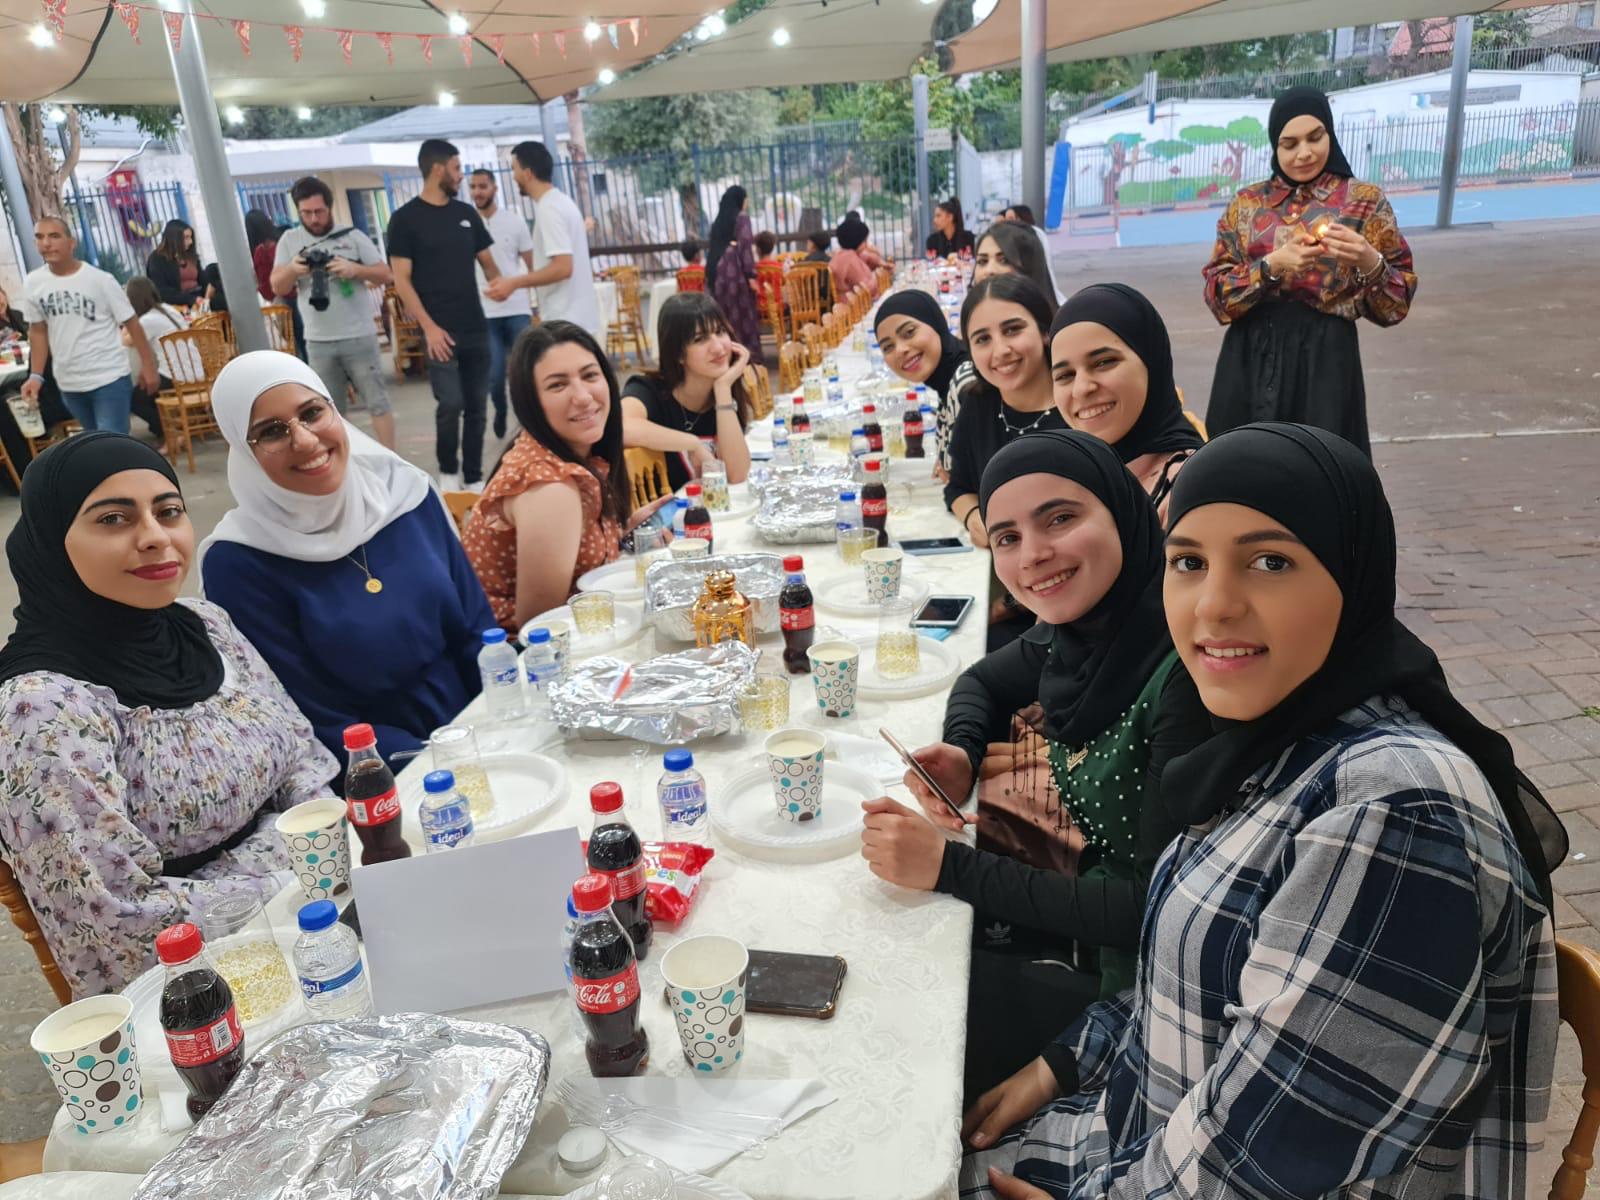 جمعية مواطنون يبنون المجتمع تُنظم افطاراً جماعياً في اللد